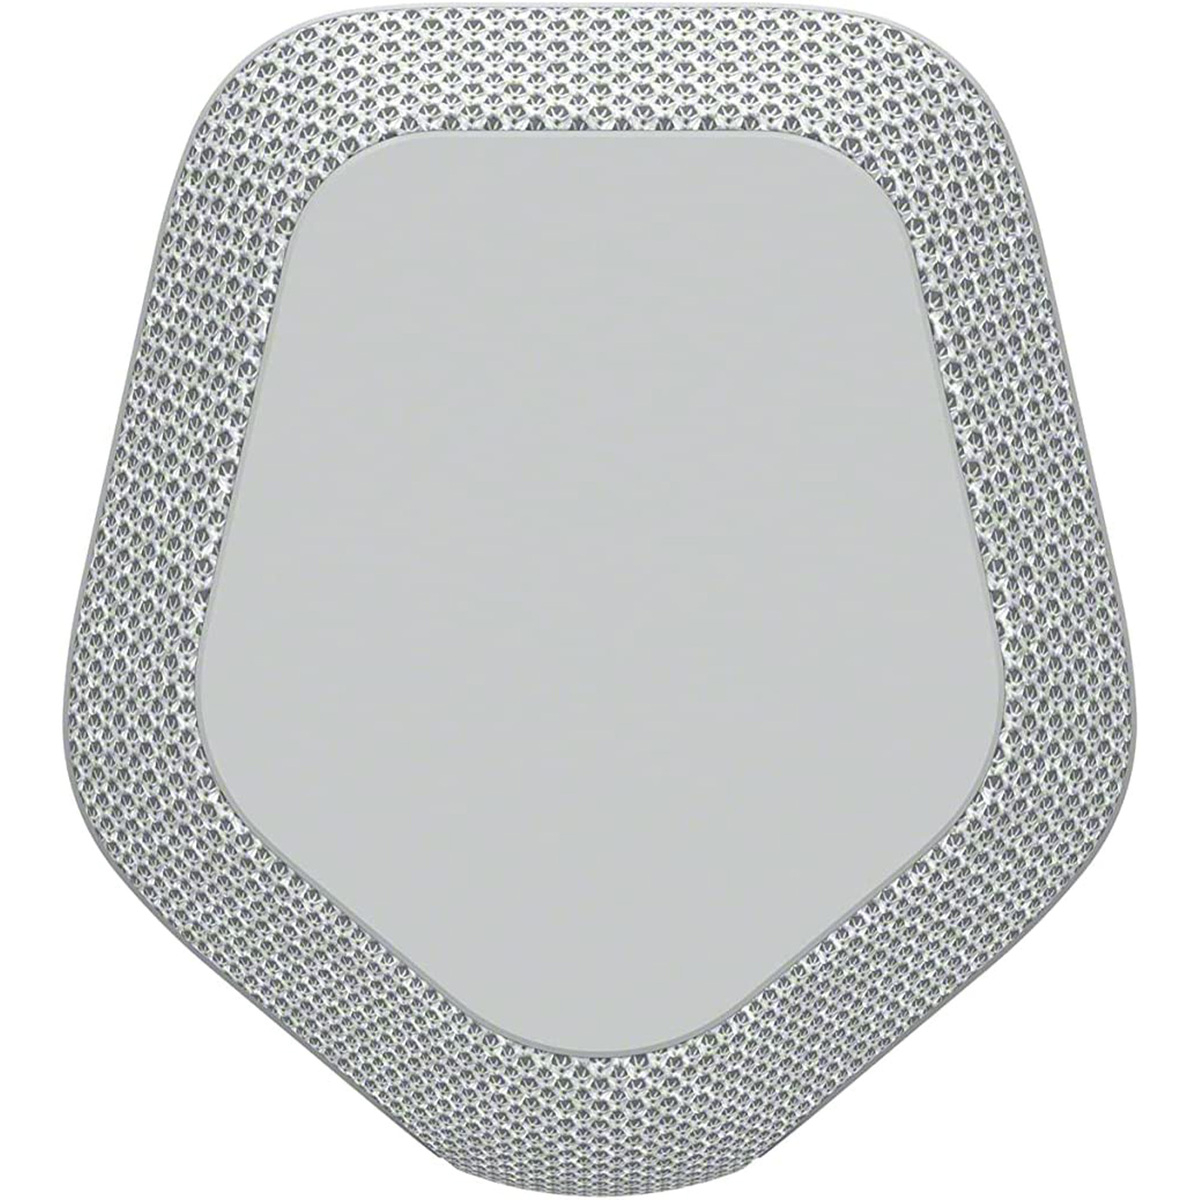 Sony Portable Wireless Bluetooth Speaker, Grey, SRS XE300